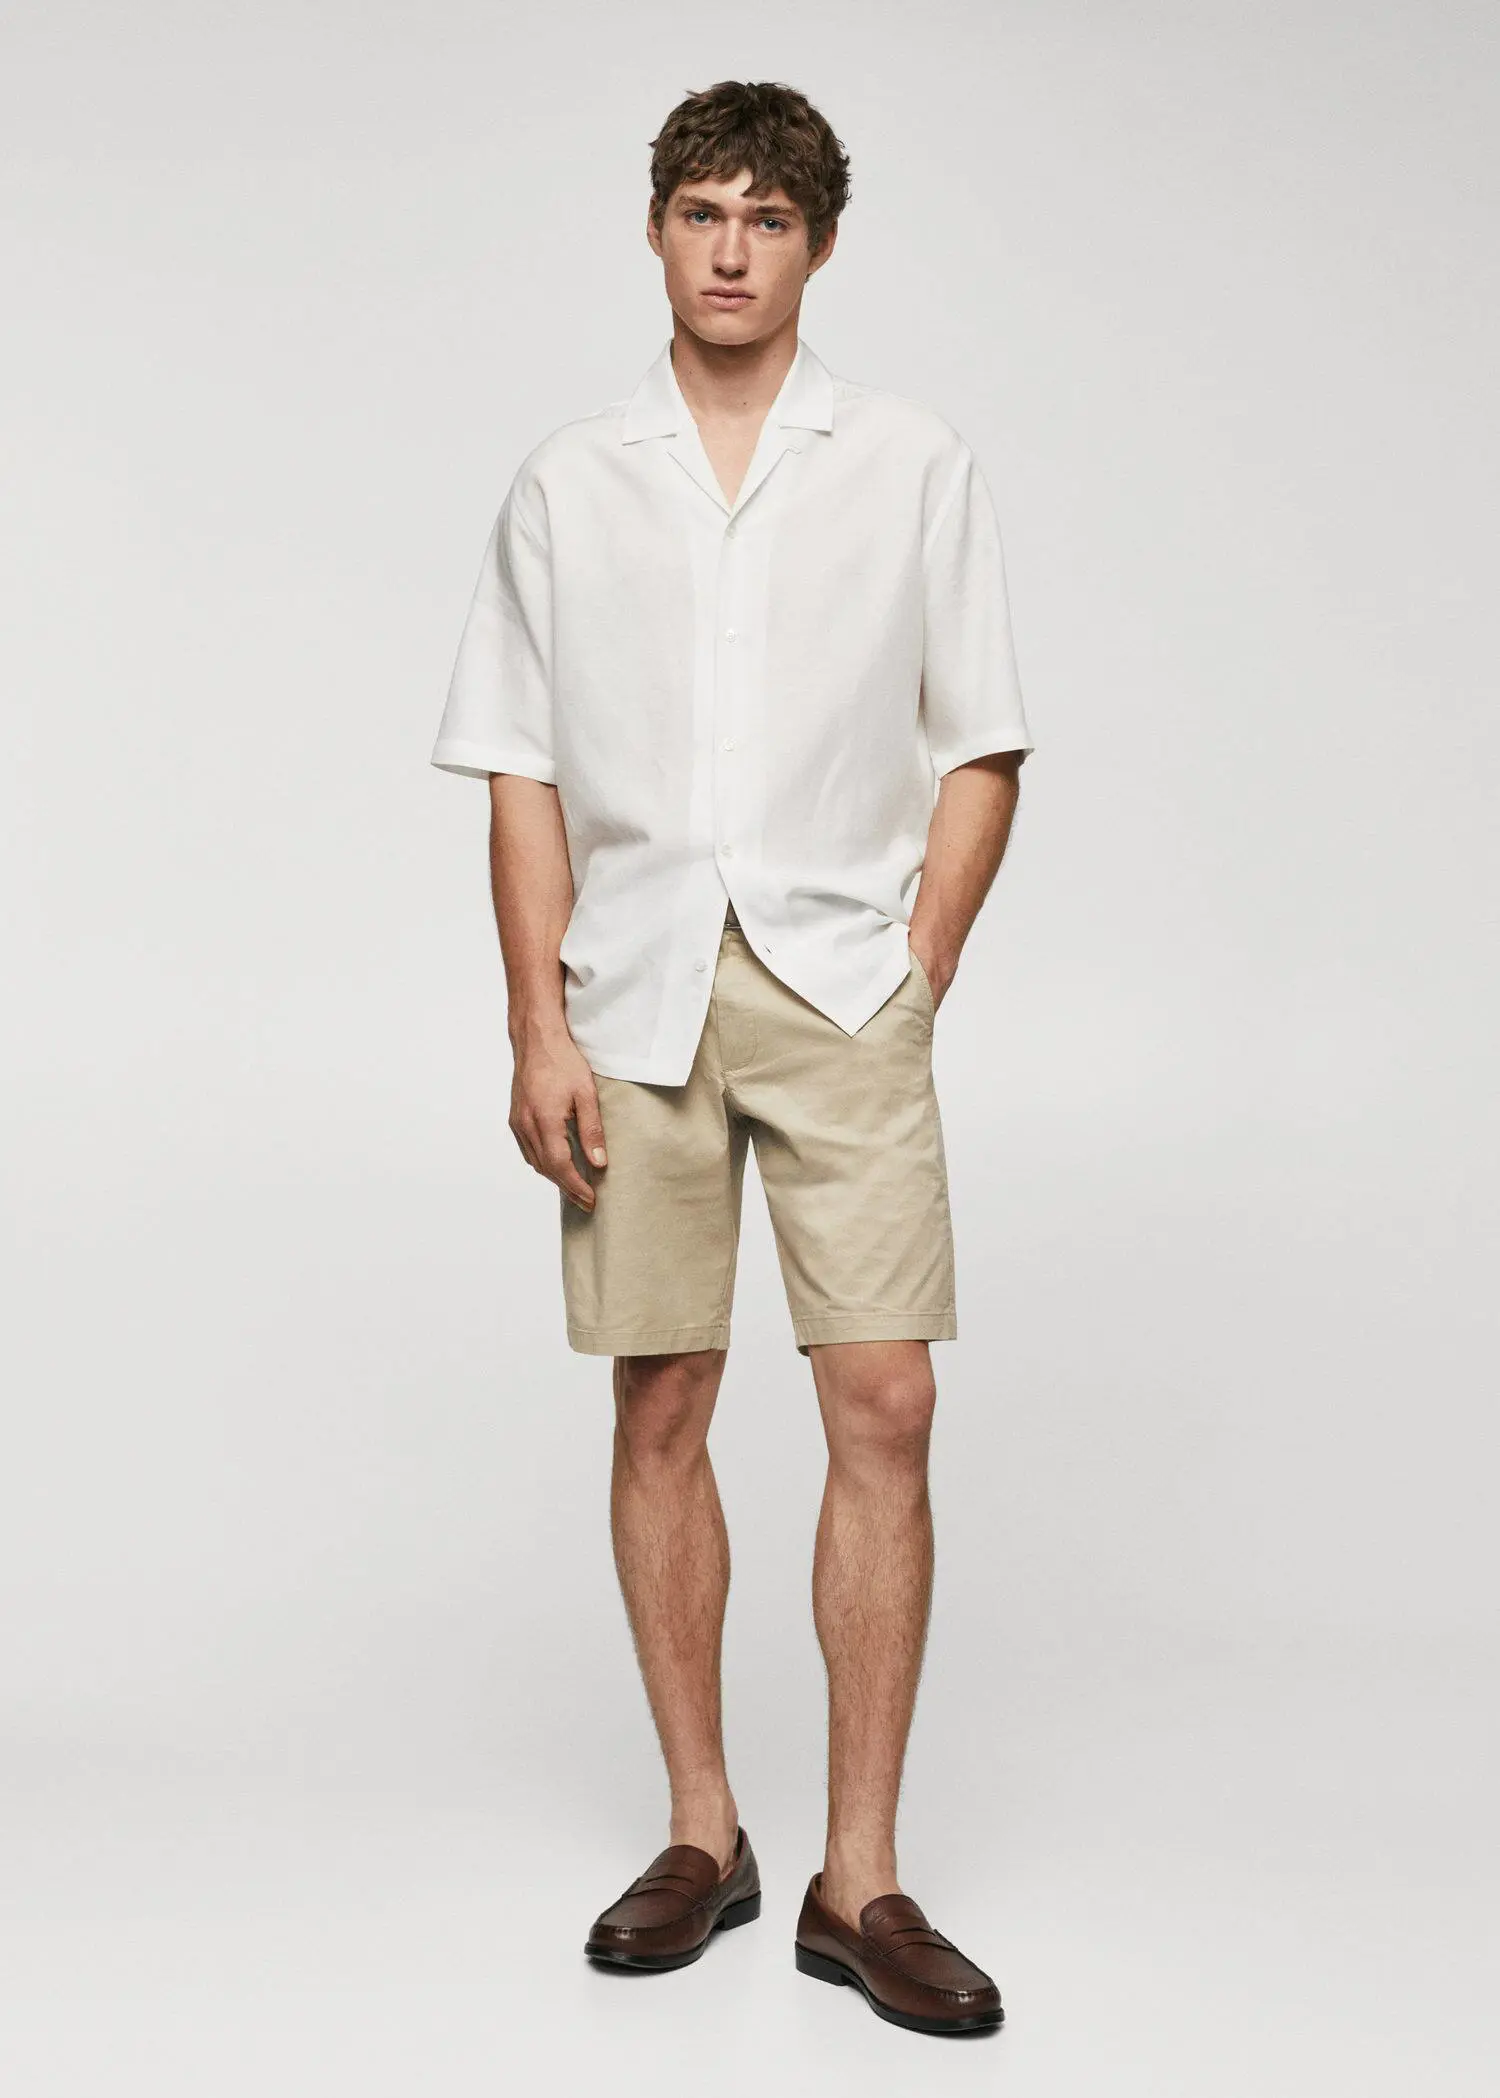 Mango Chino Bermuda shorts. a man in a white shirt and tan shorts. 